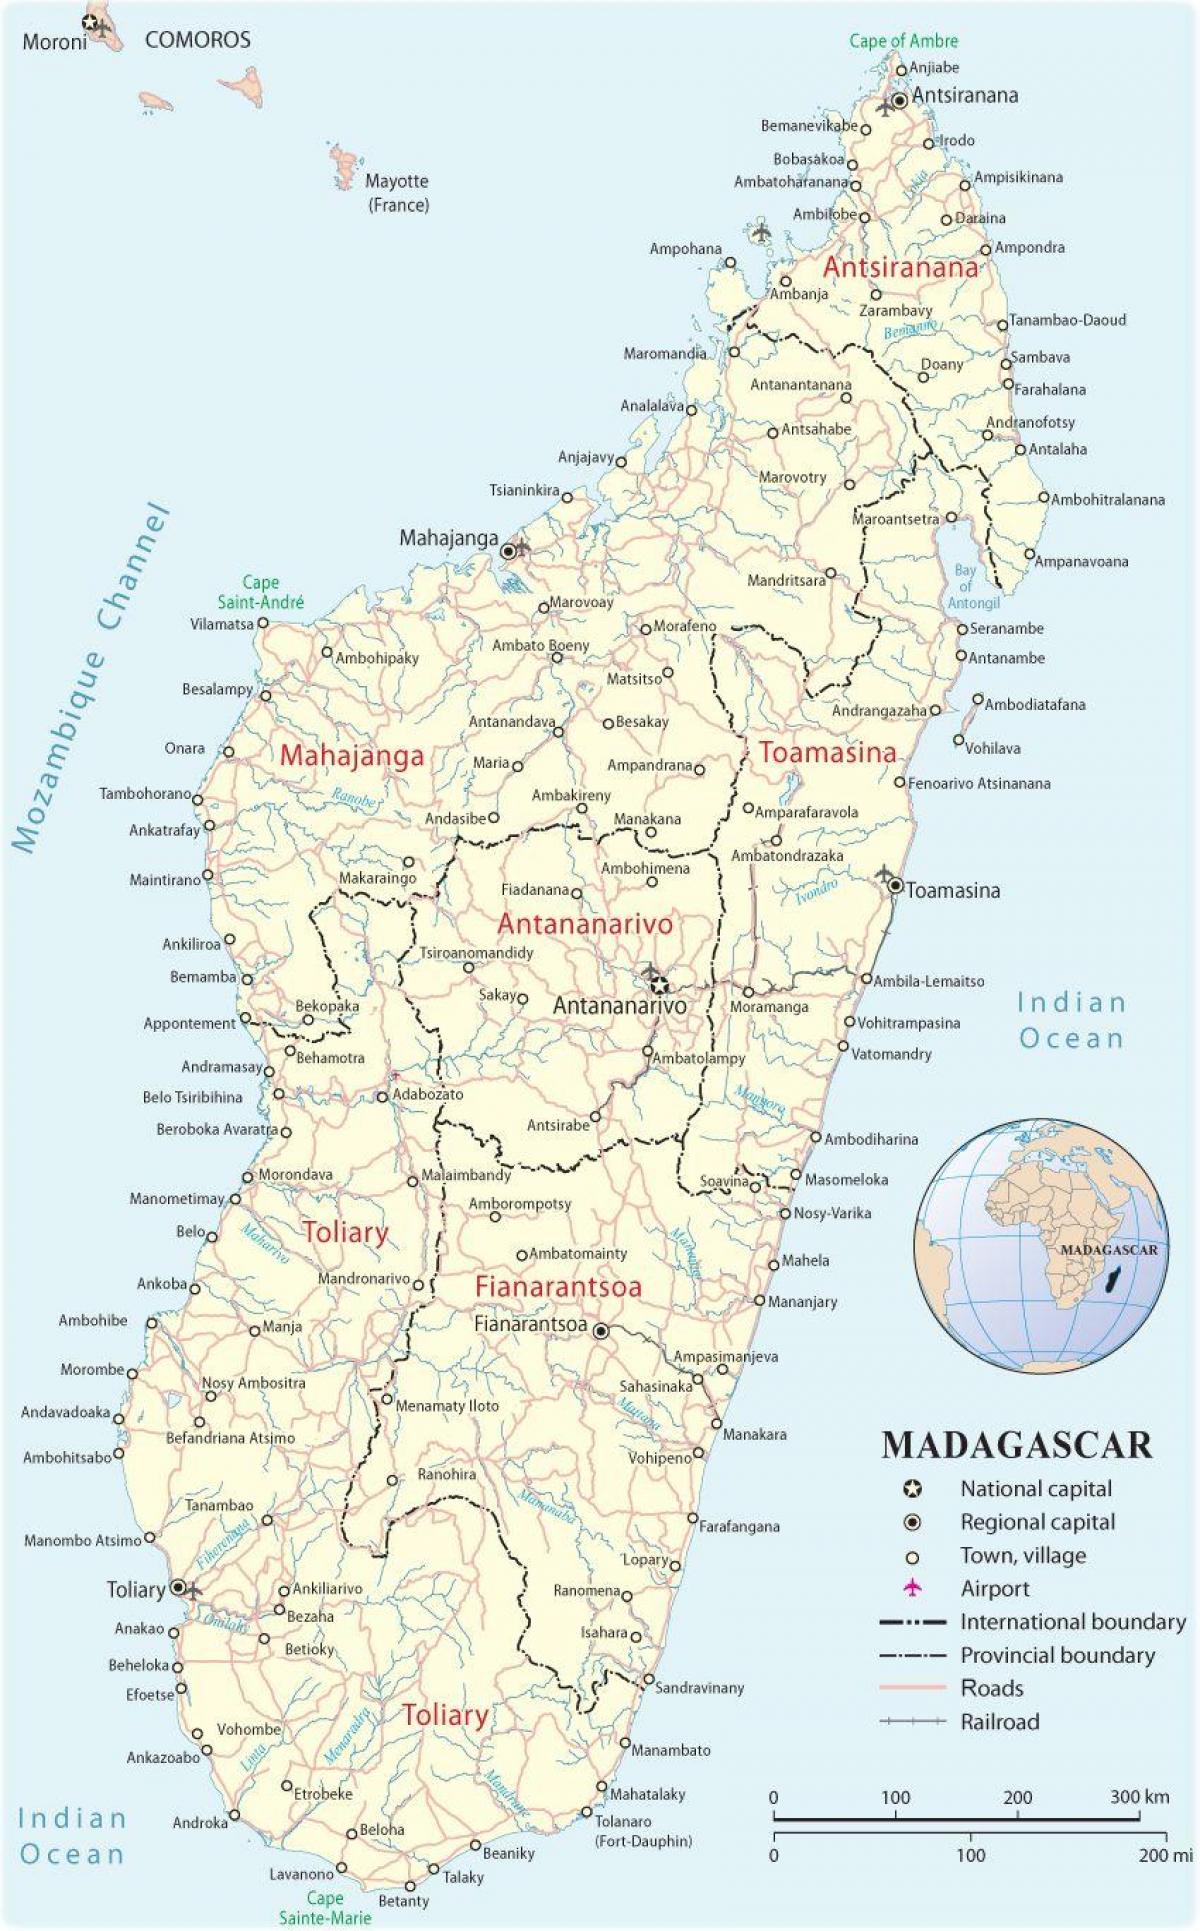 نقشه از فرودگاه ماداگاسکار